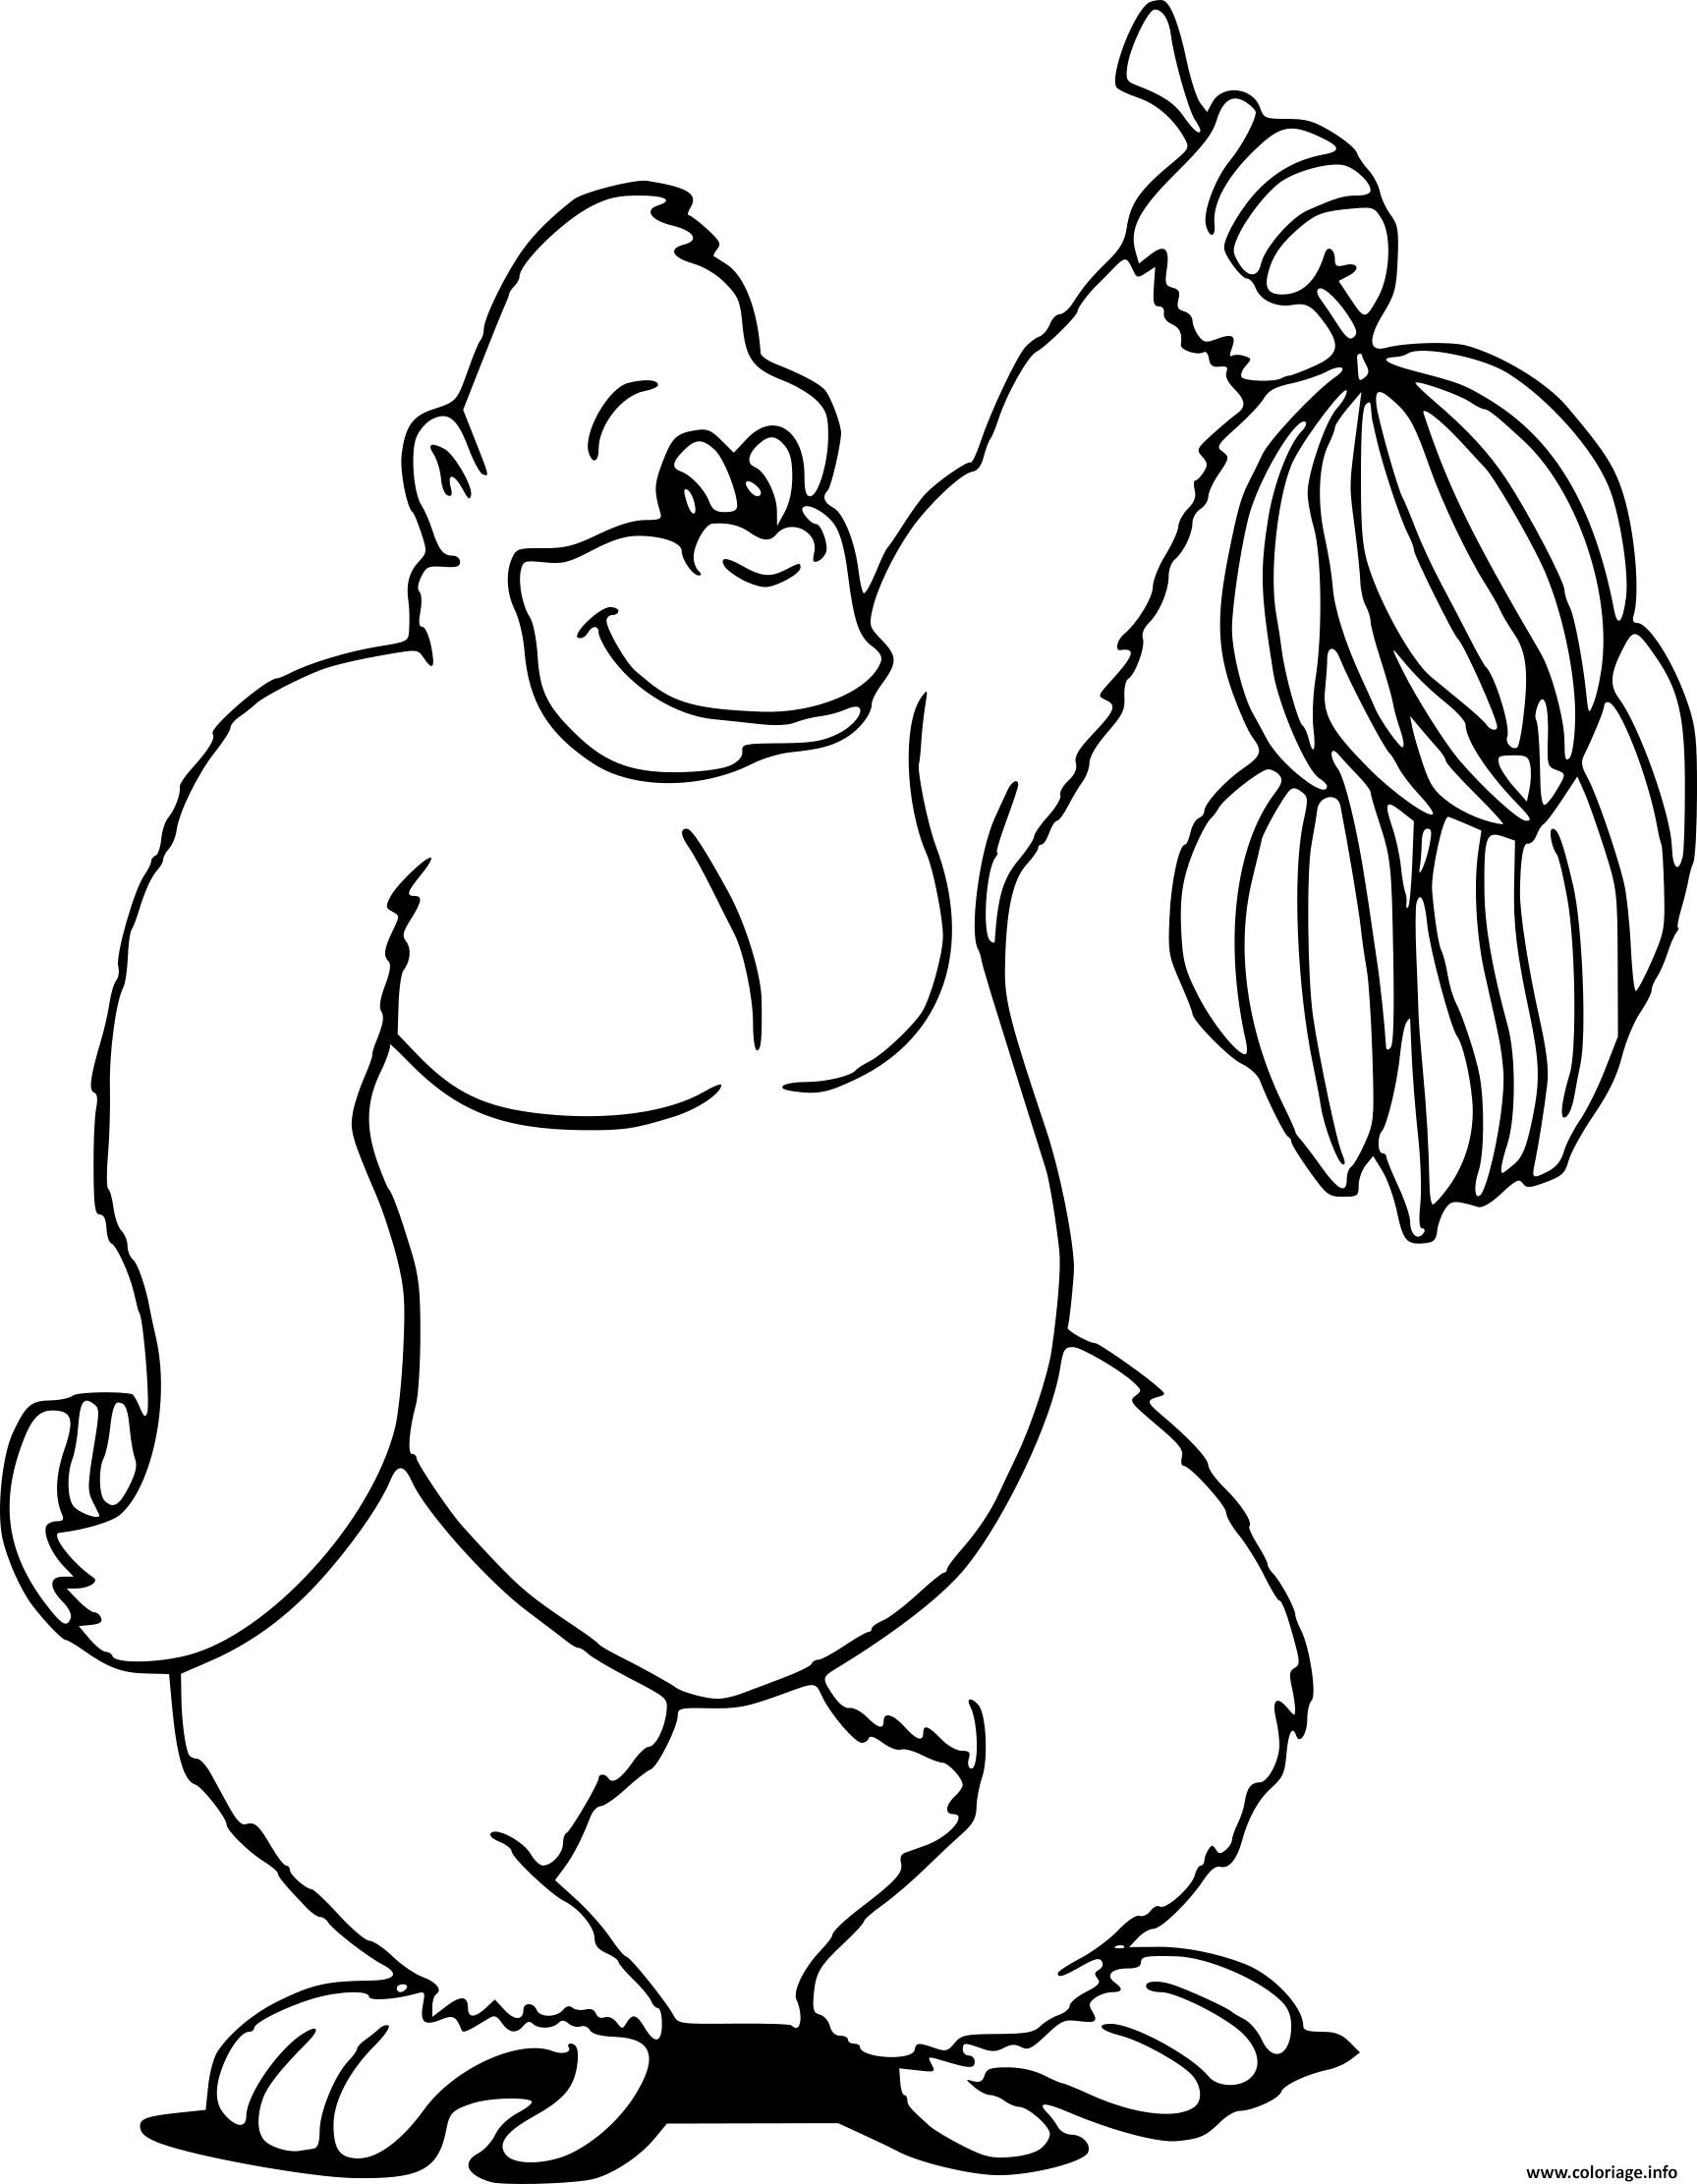 Coloriage Gorille Aime Les Bananes De La Jungle Dessin Animaux De La dedans Coloriage Animaux A Imprimer